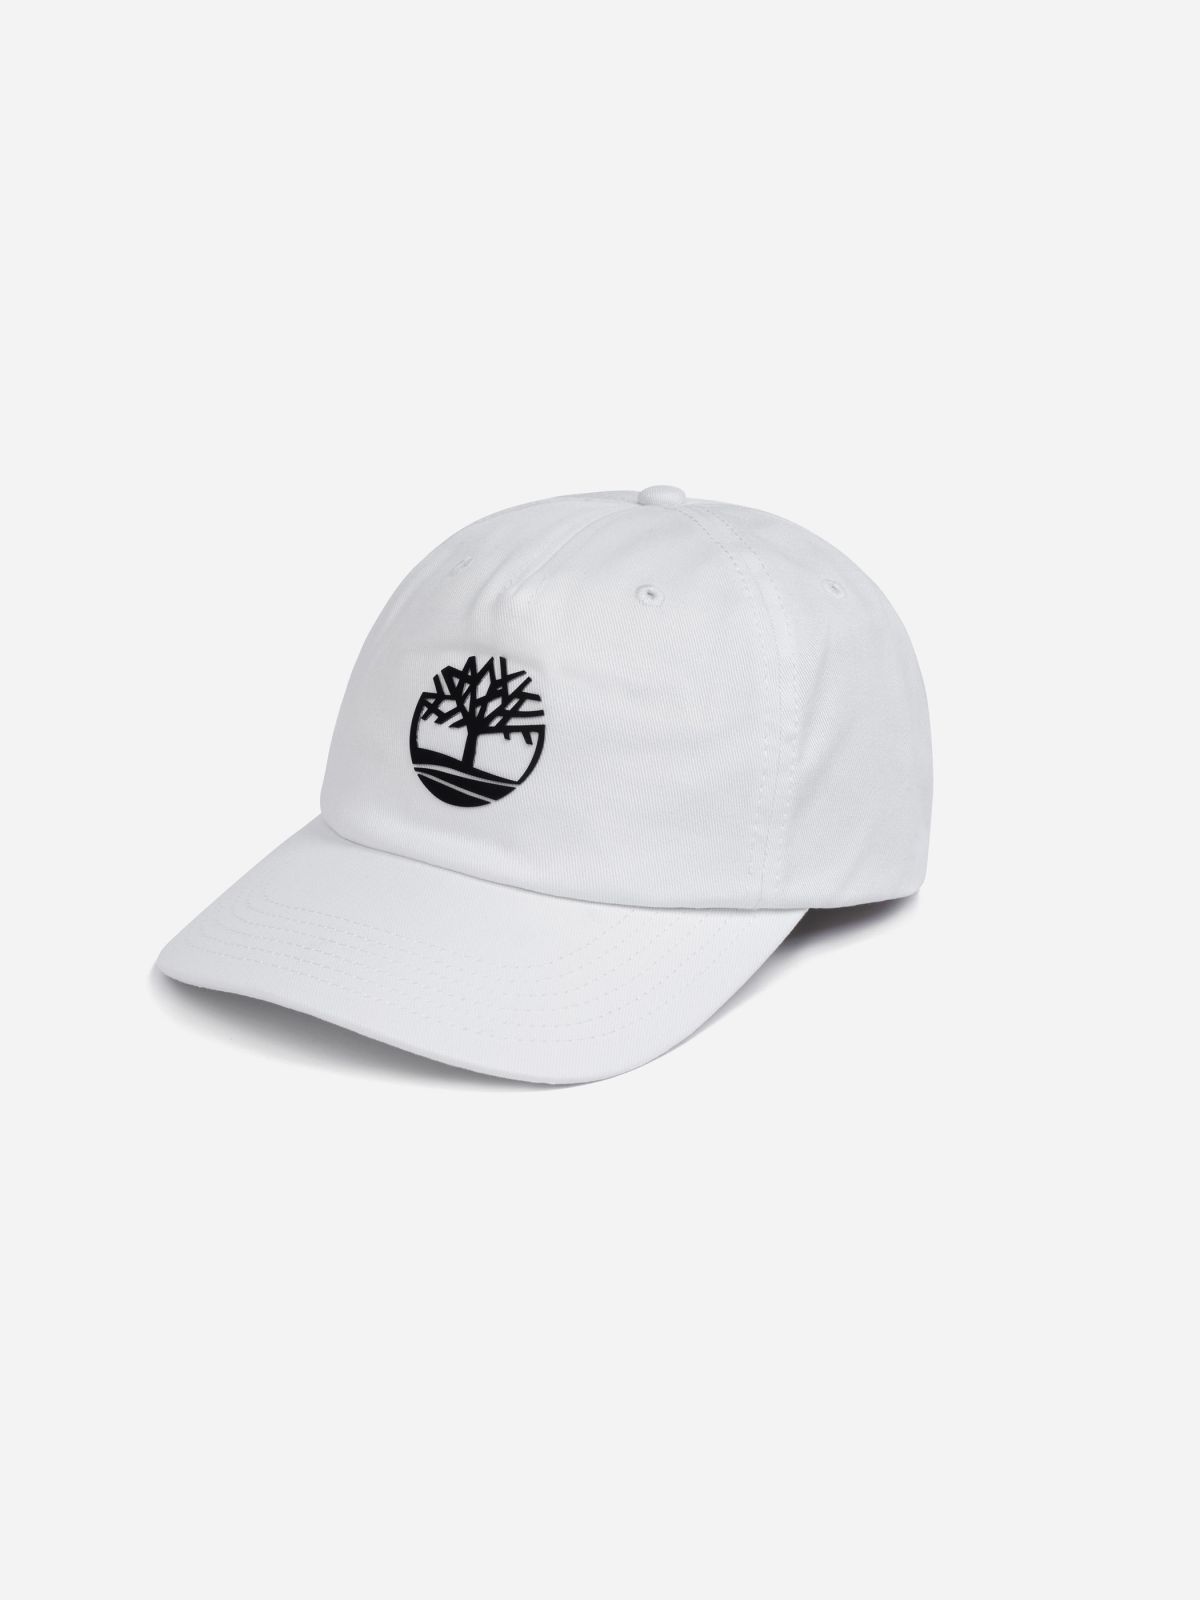  כובע מצחייה עם לוגו / גברים של TIMBERLAND